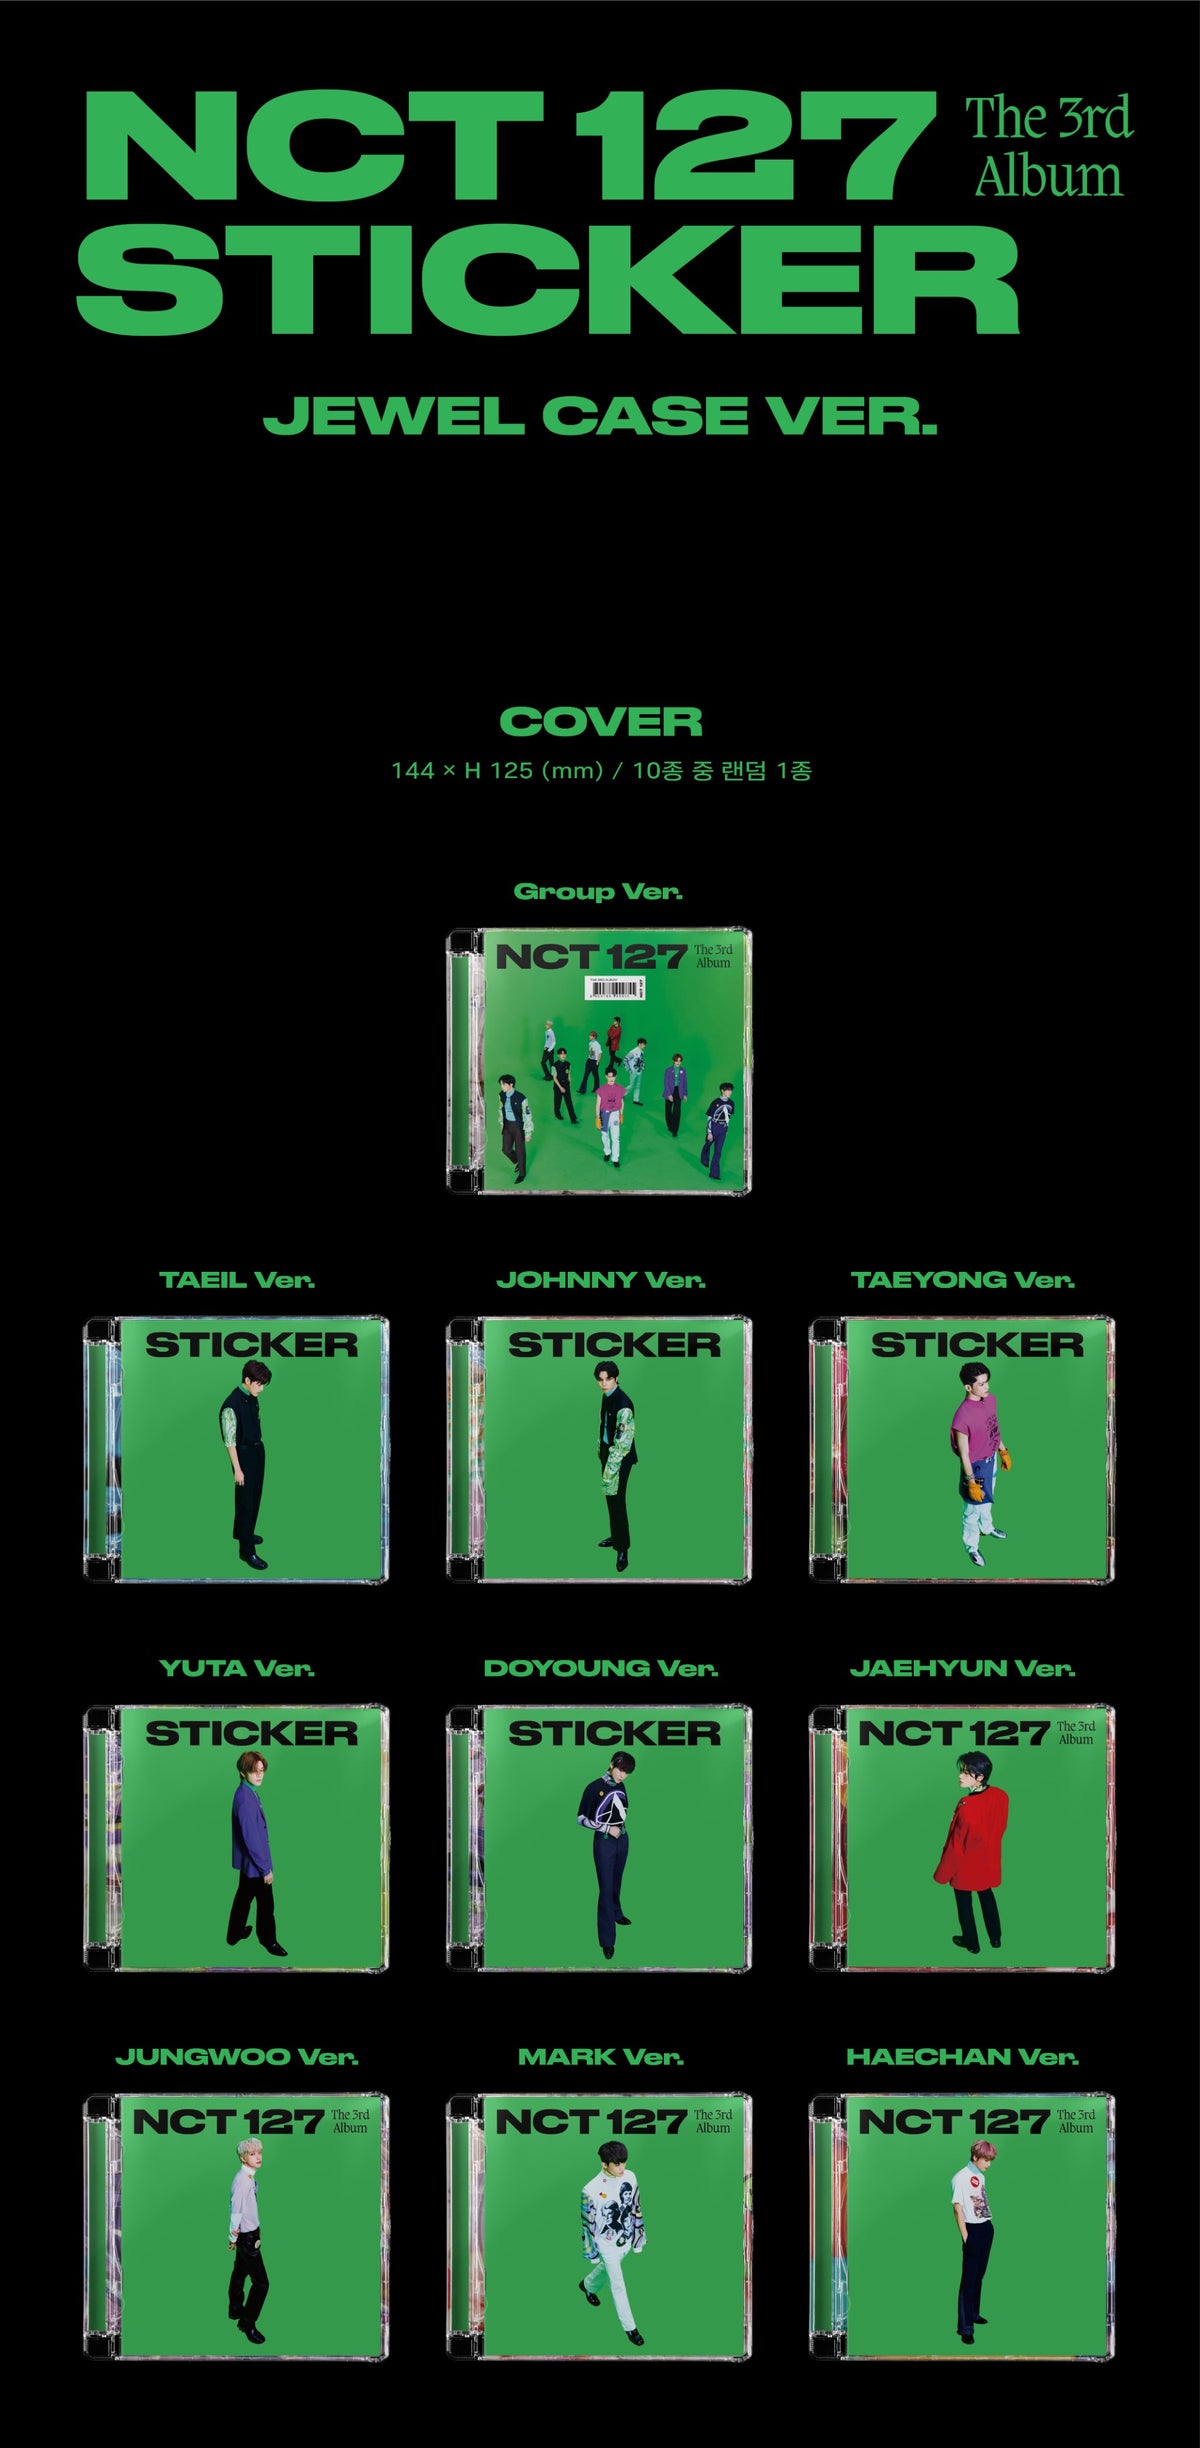 NCT 127 Vol. 3 - STICKER (Jewel Case Version)